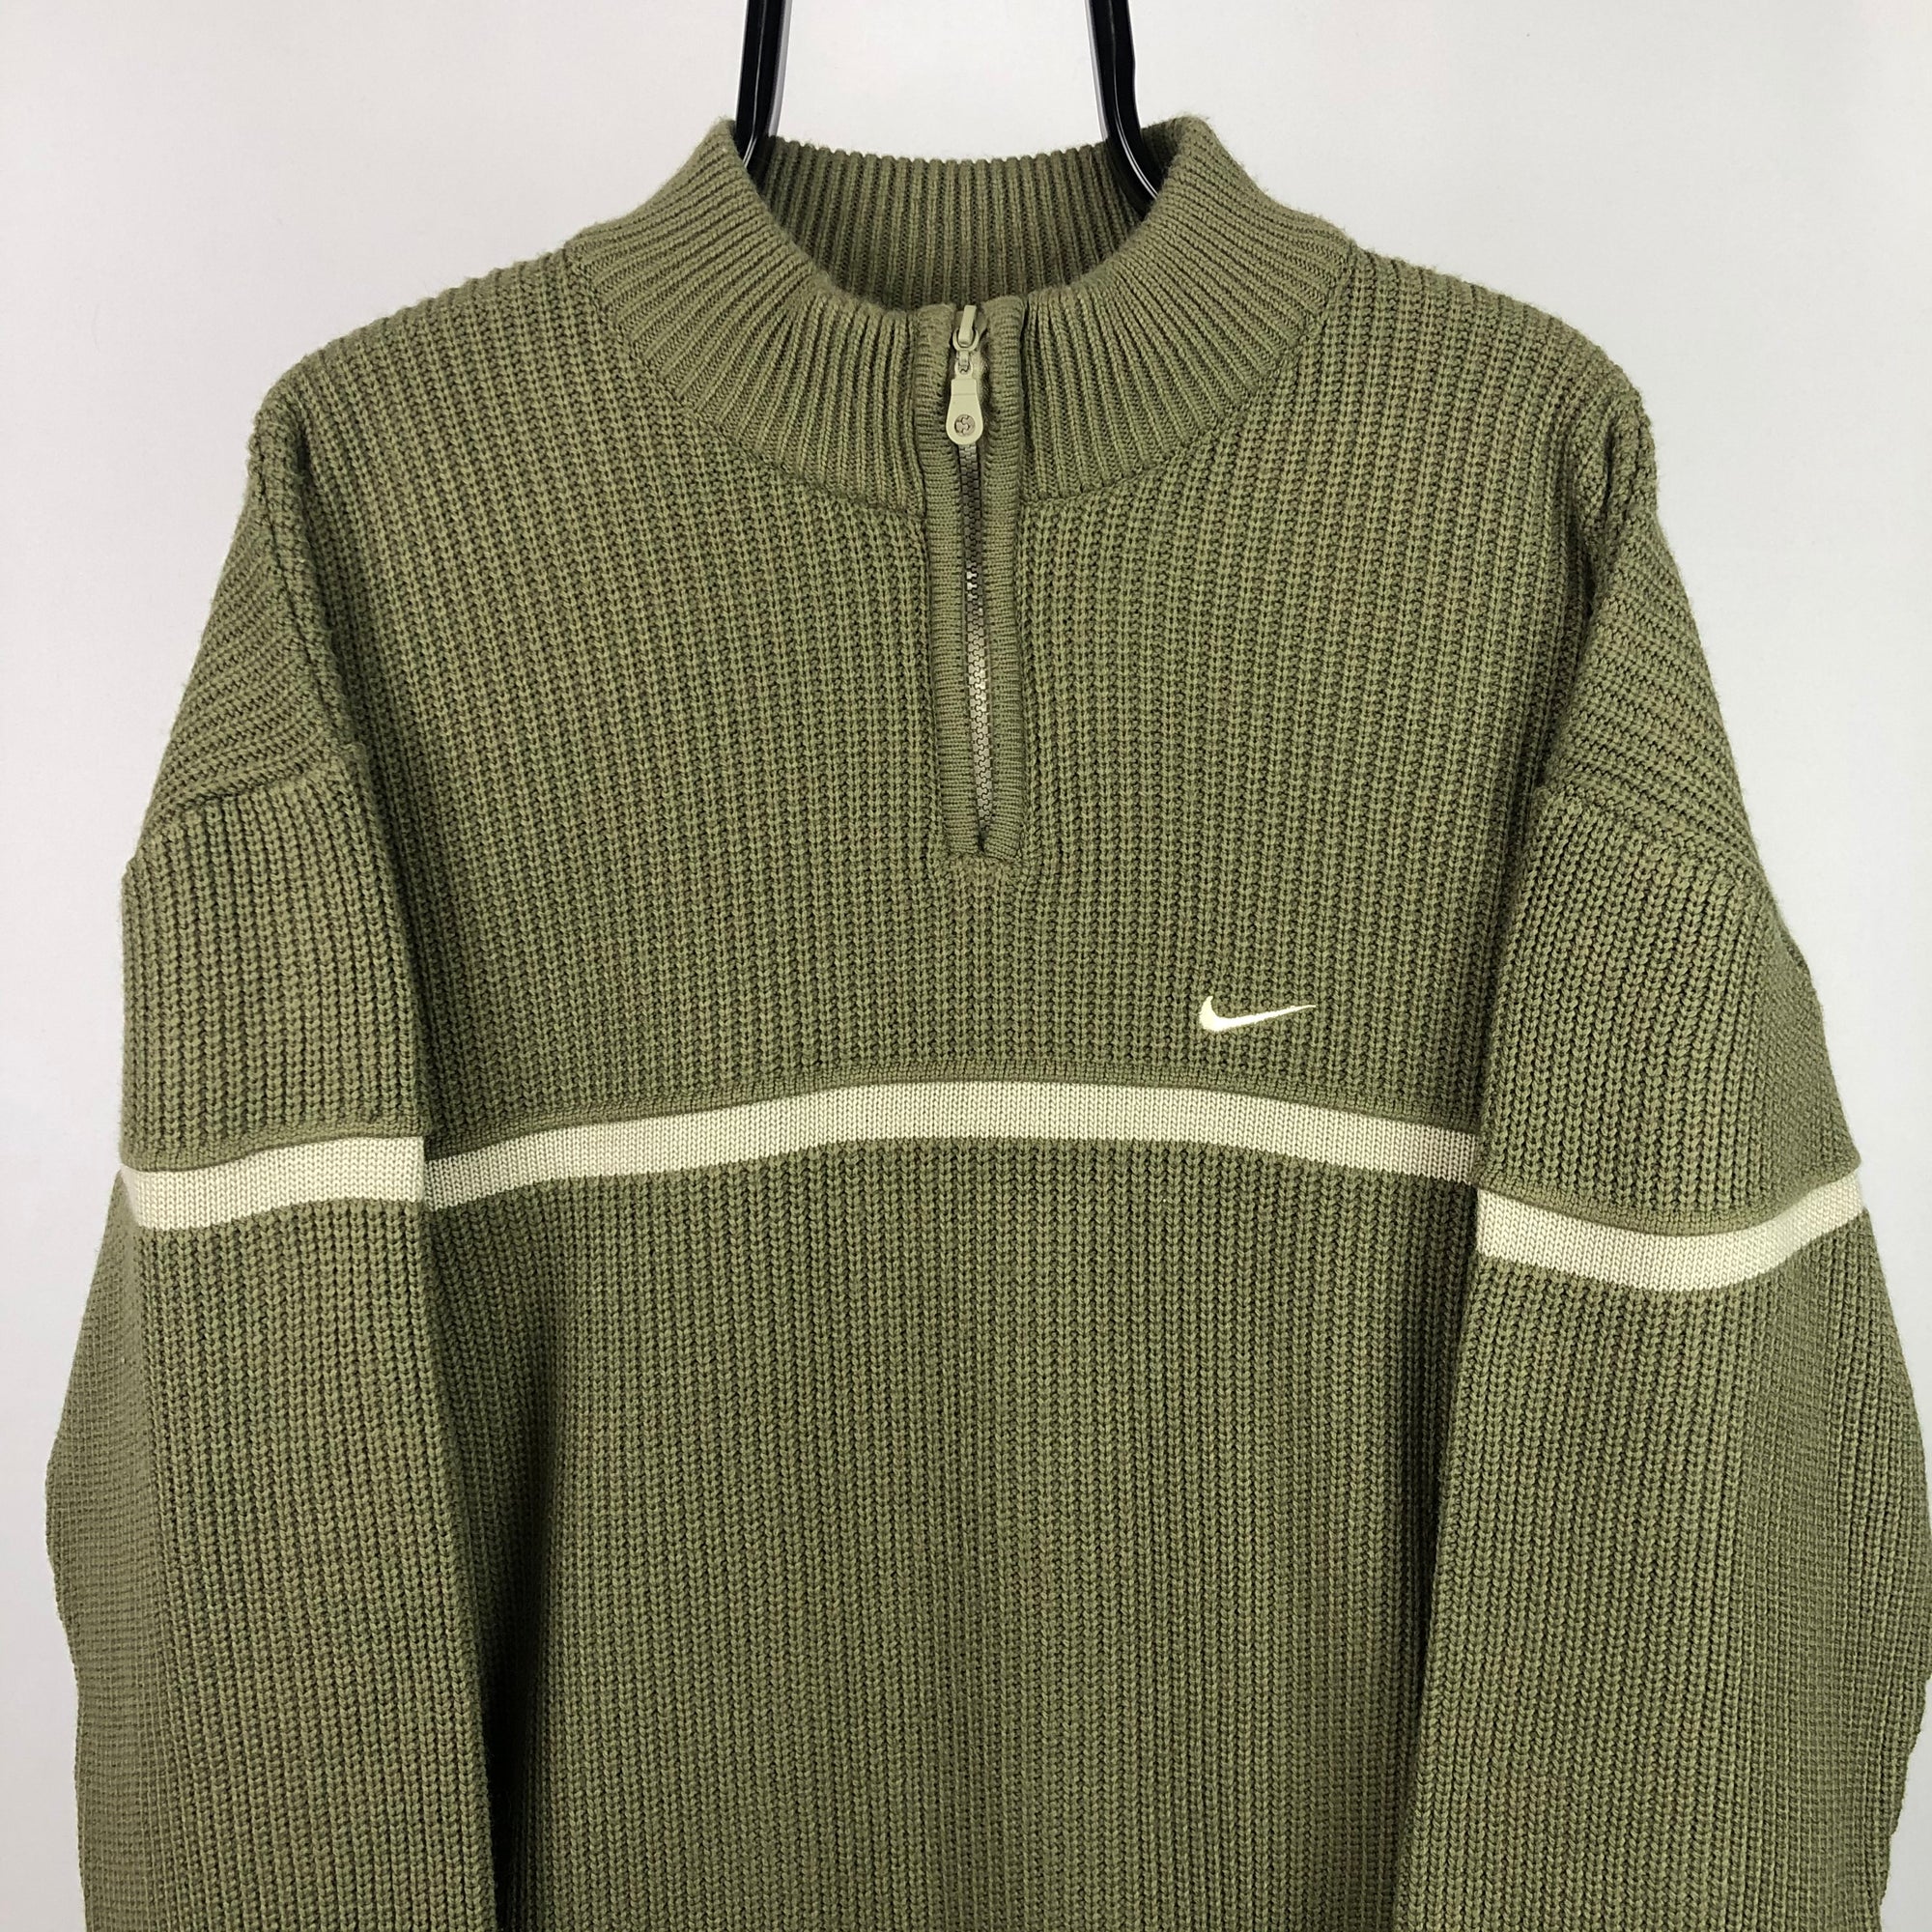 Vintage Nike Knit Sweater in Khaki/Beige - Men's Large/Women's XL